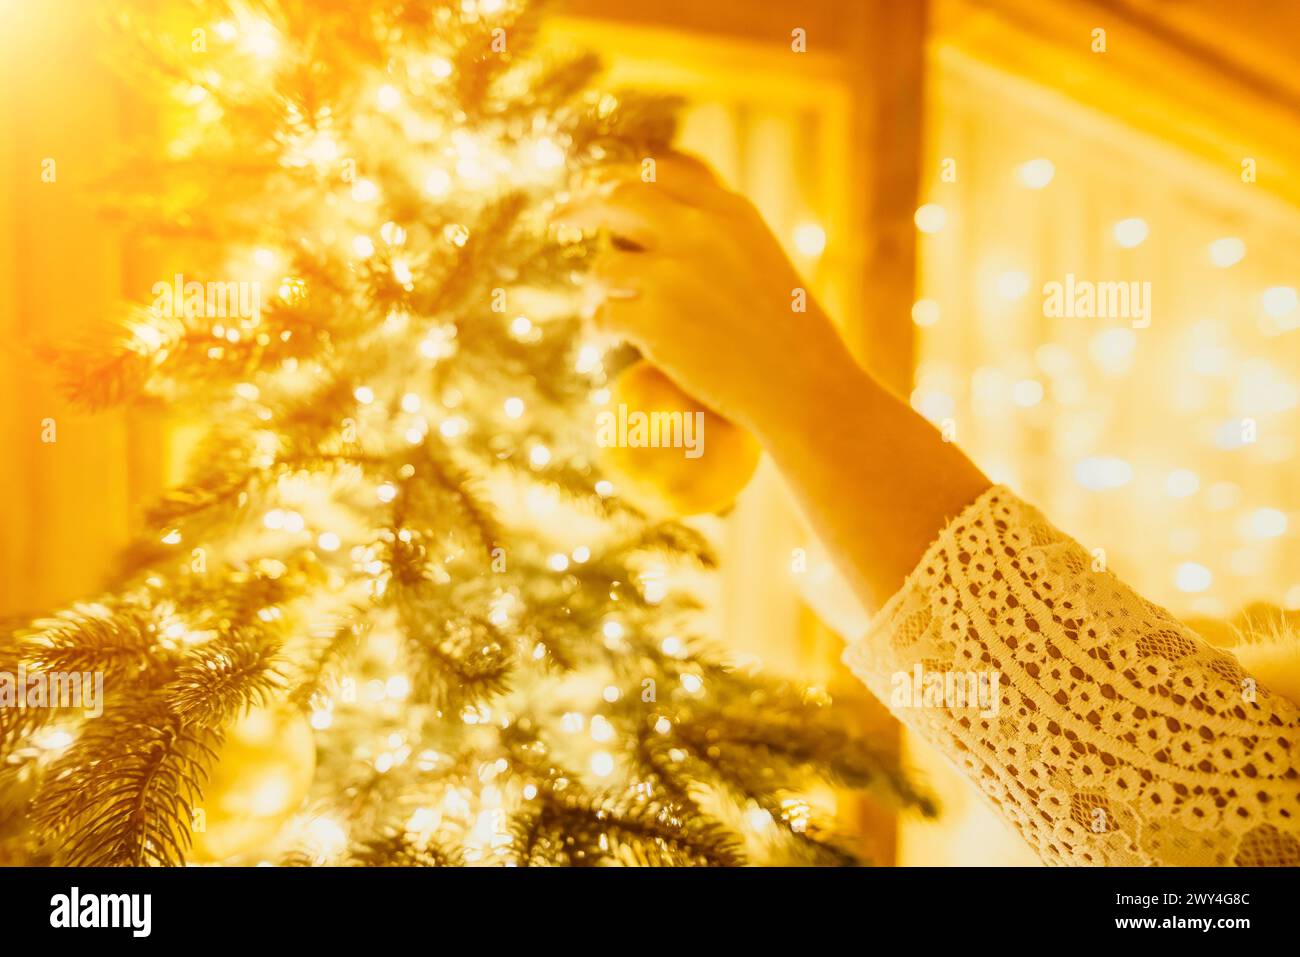 Eine Frau schmückt Einen Weihnachtsbaum mit goldenen Ornamenten und Lichtern. Der Baum ist mit Goldkugeln dekoriert und mit Lichtern beleuchtet. Stockfoto